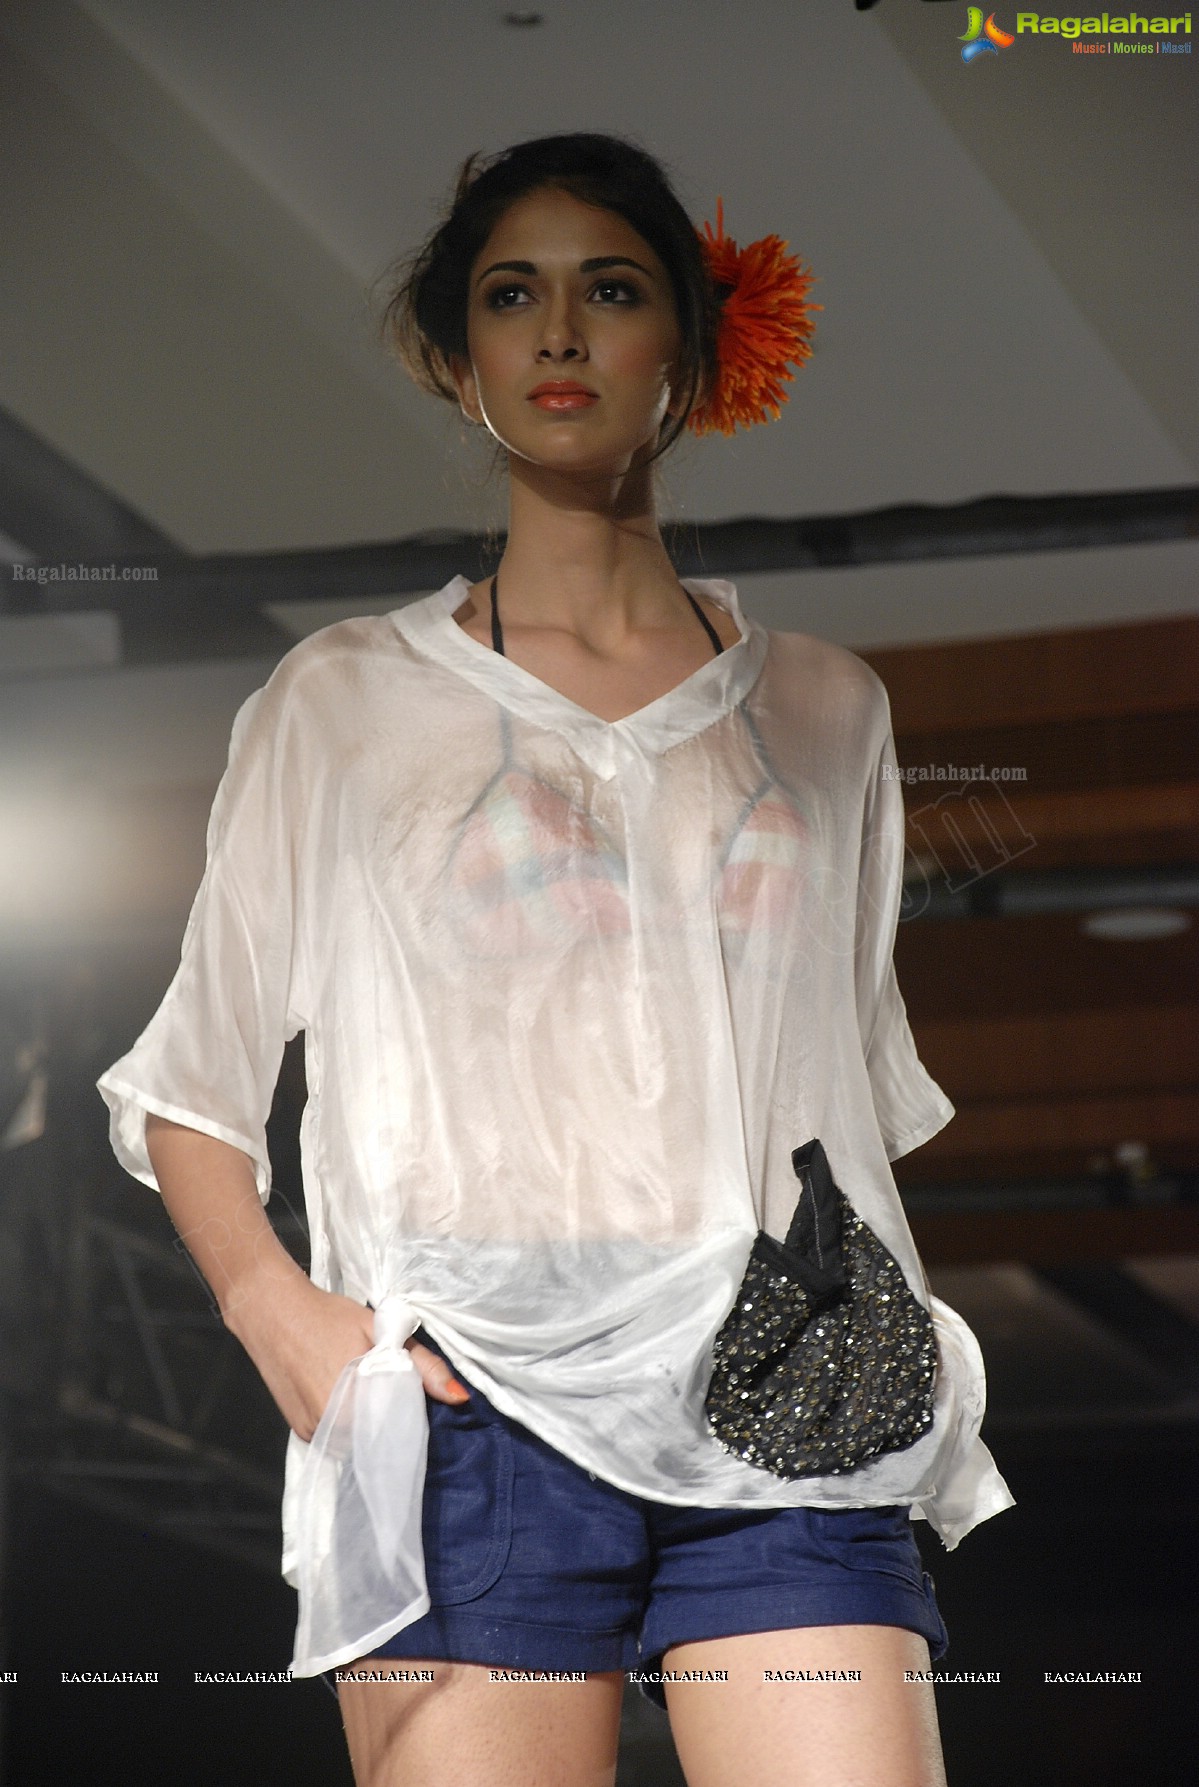 Hyderabad International Fashion Week 2011 (Day 1)